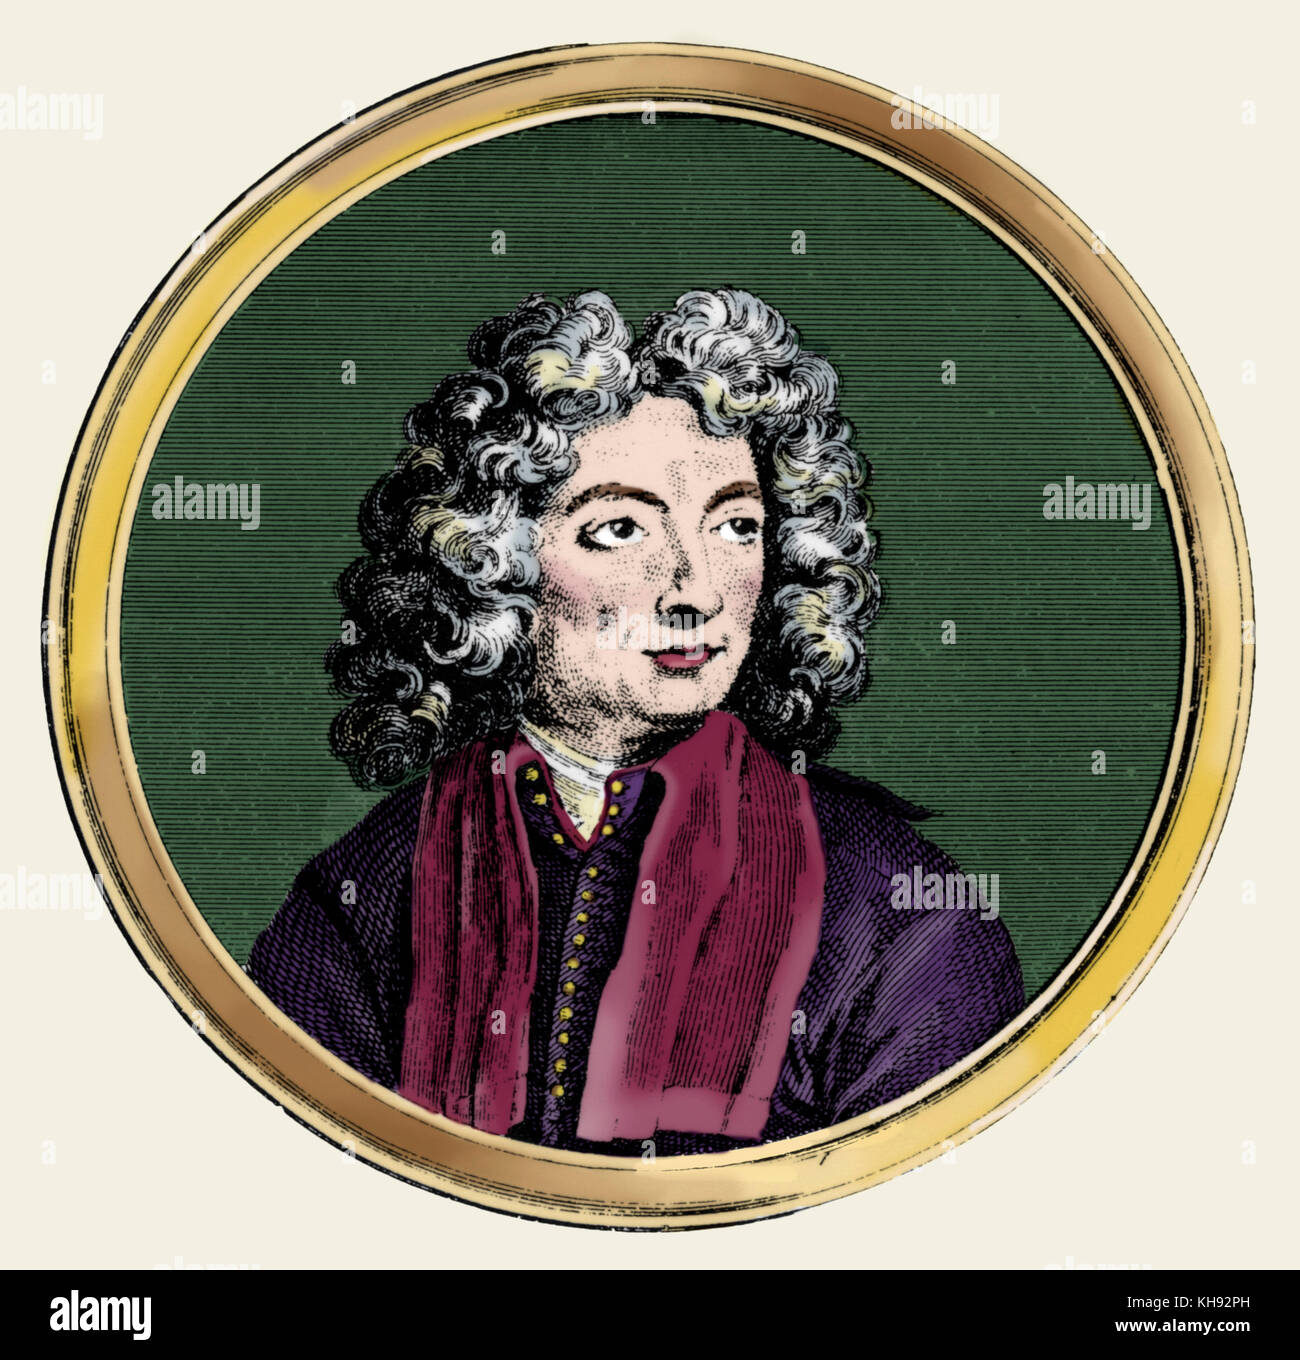 Arcangelo Corelli ritratto. Compositore italiano & violinista. 17 Febbraio 1653 - 8 Gennaio 1713 Foto Stock